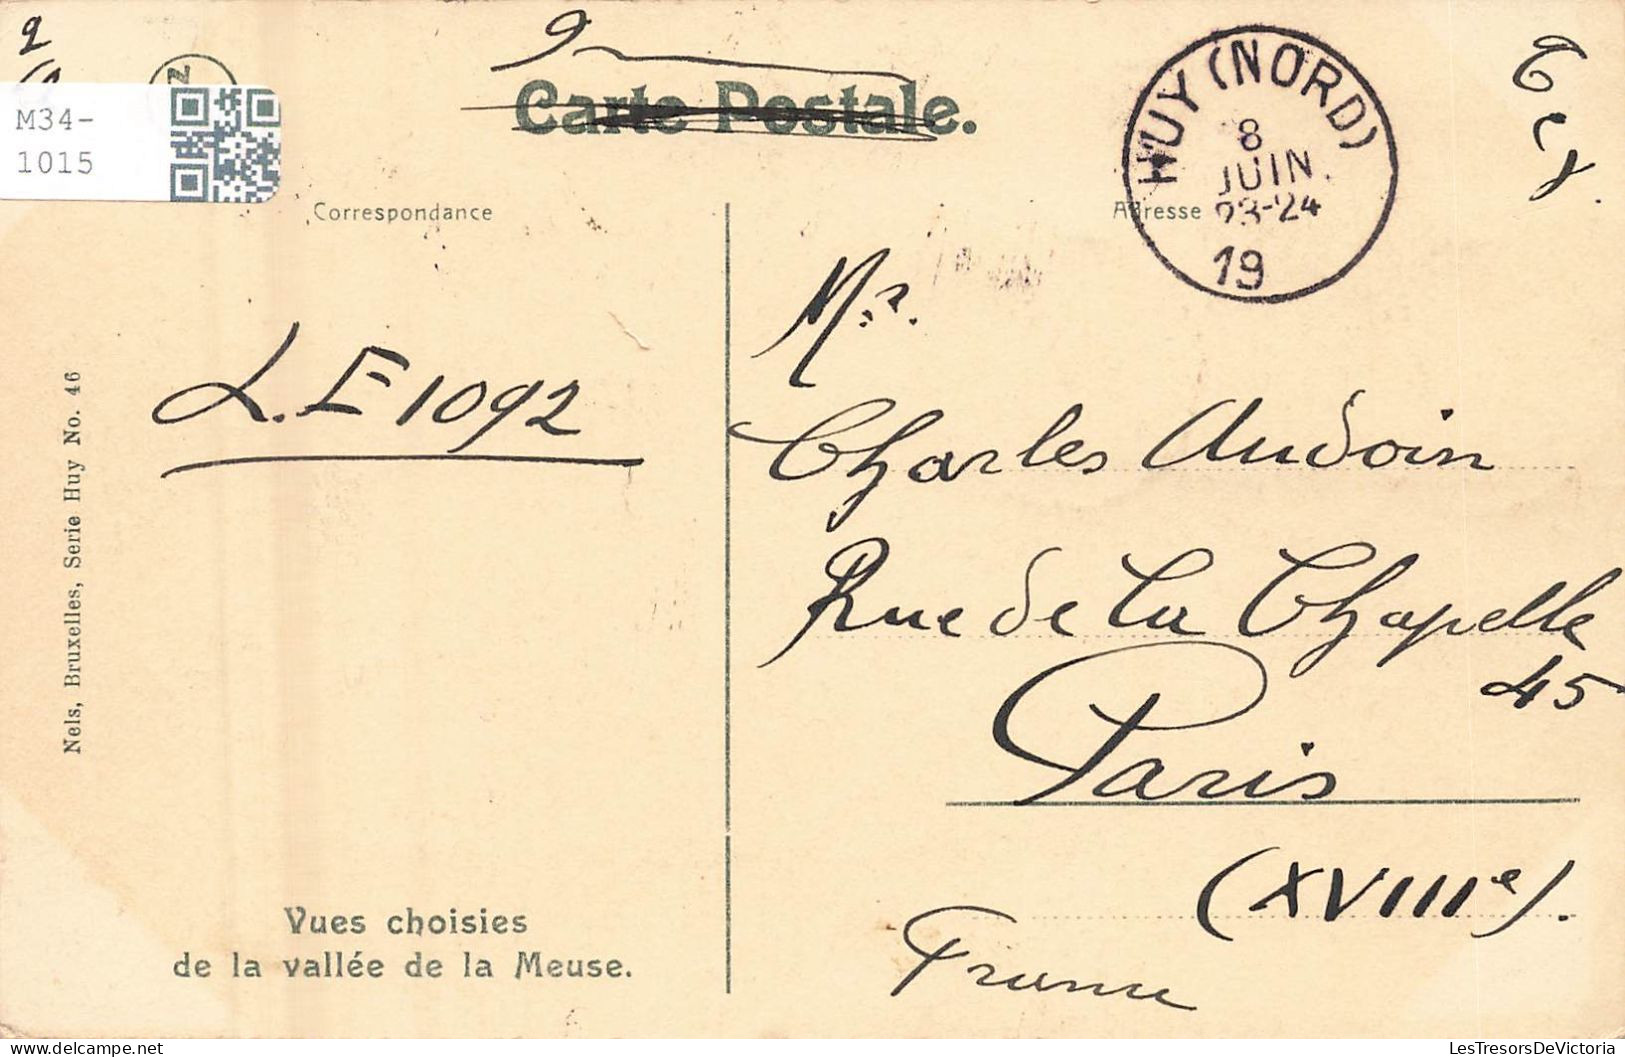 BELGIQUE - Huy - Vue Générale En Amont Du Pont - Carte Postale Ancienne - Huy